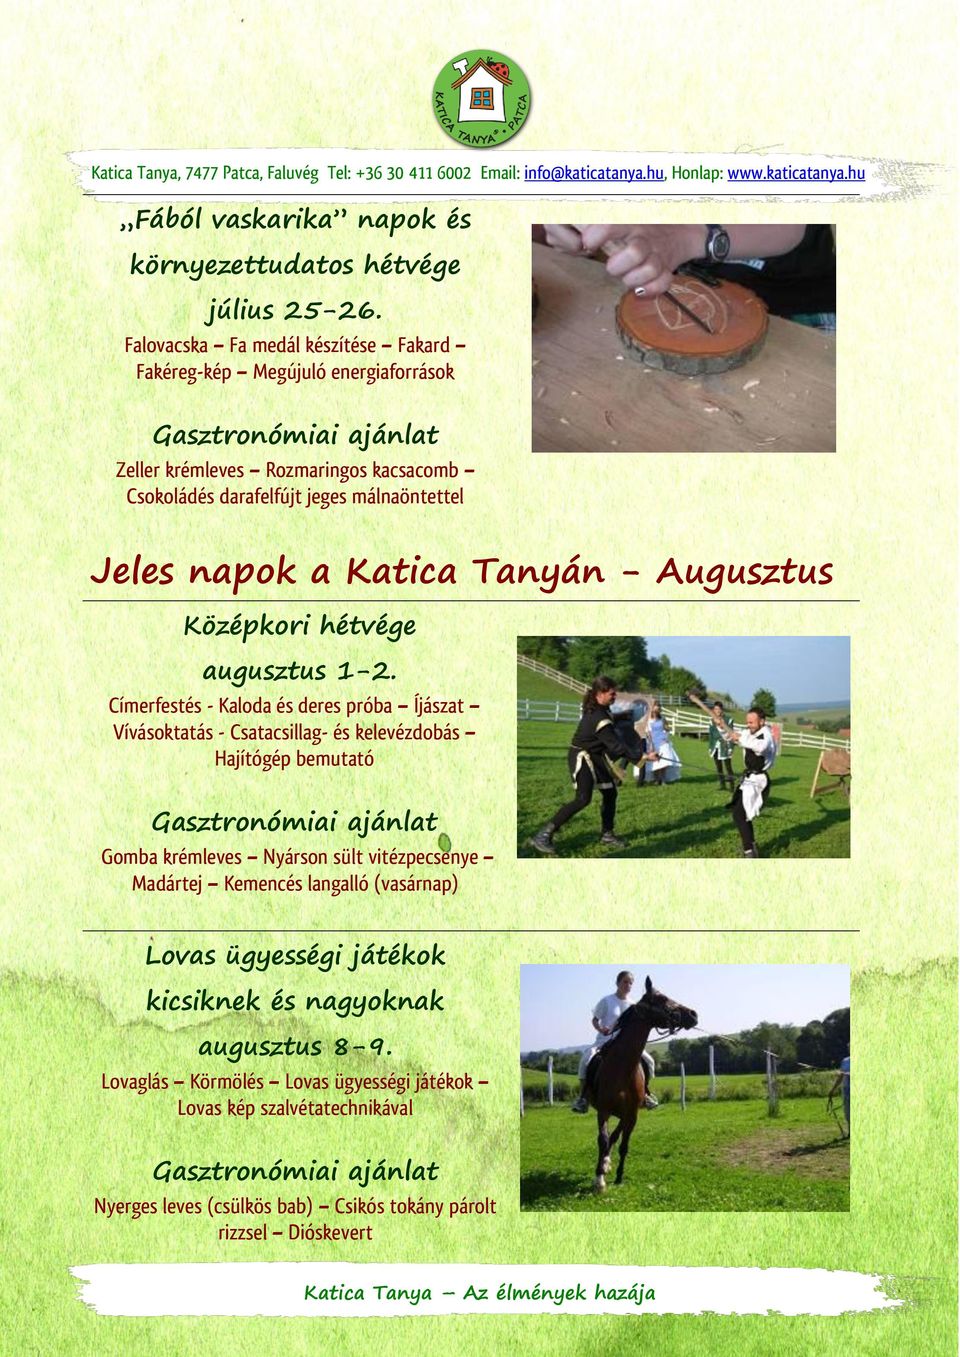 Katica Tanyán - Augusztus Középkori hétvége augusztus 1-2.